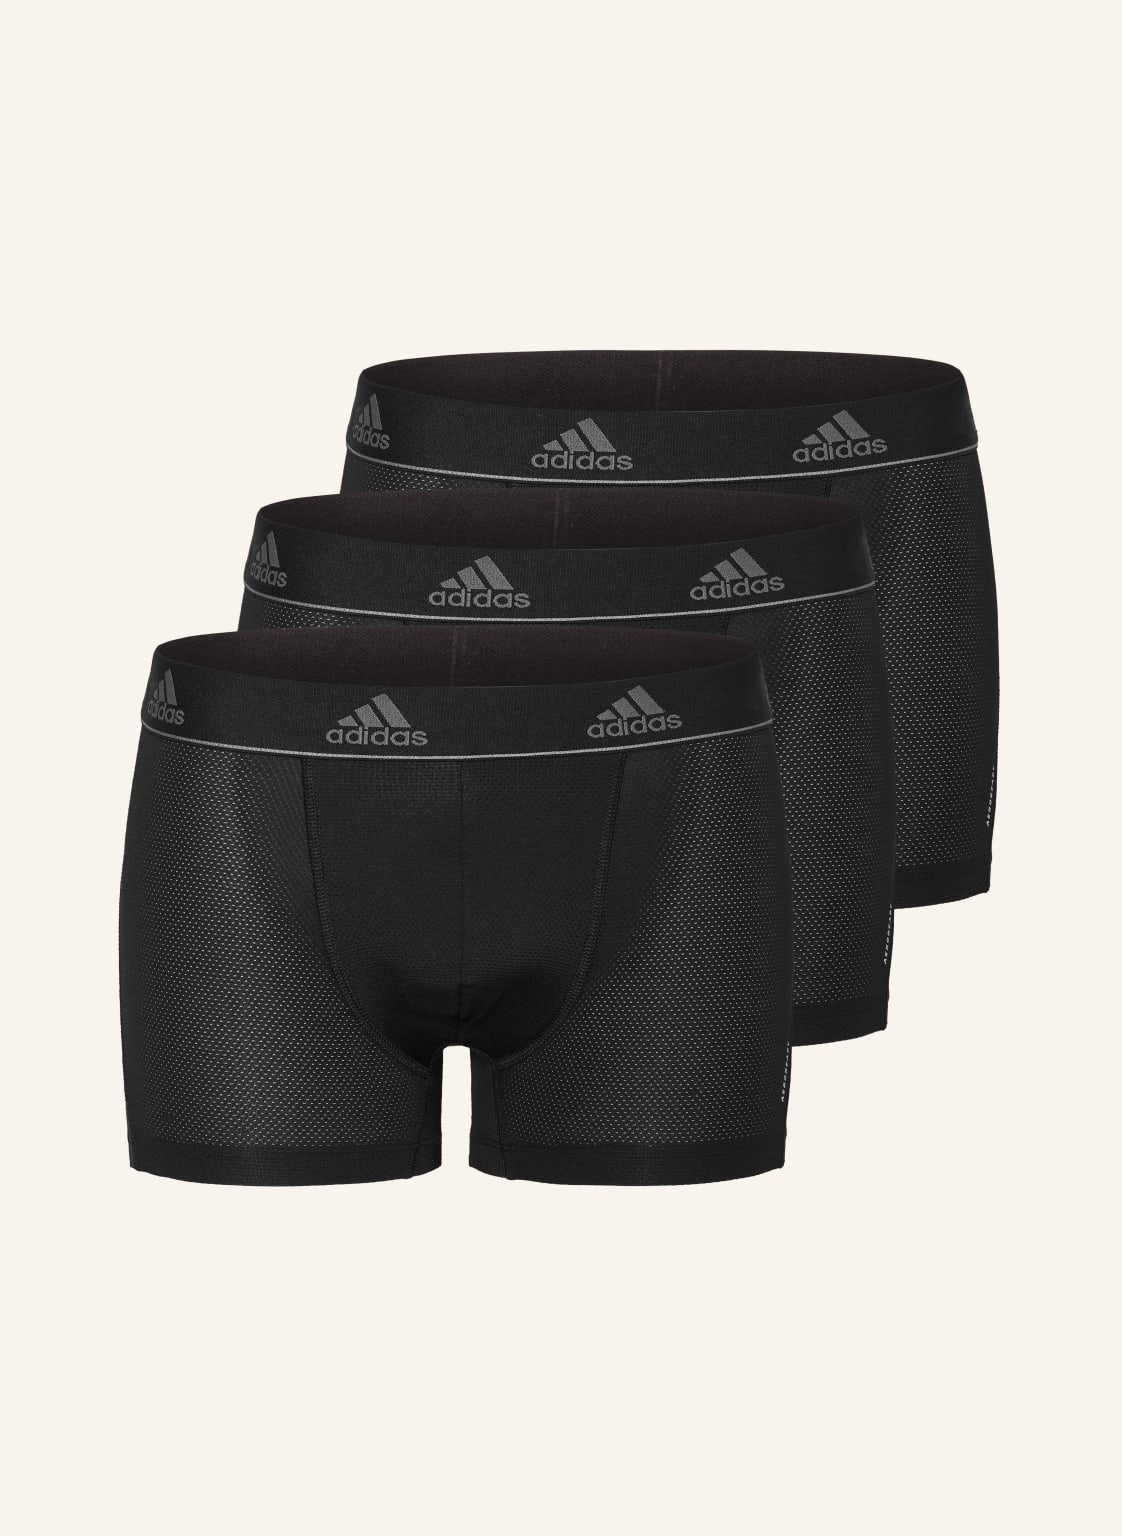 Adidas 3er-Pack Boxershorts schwarz von Adidas